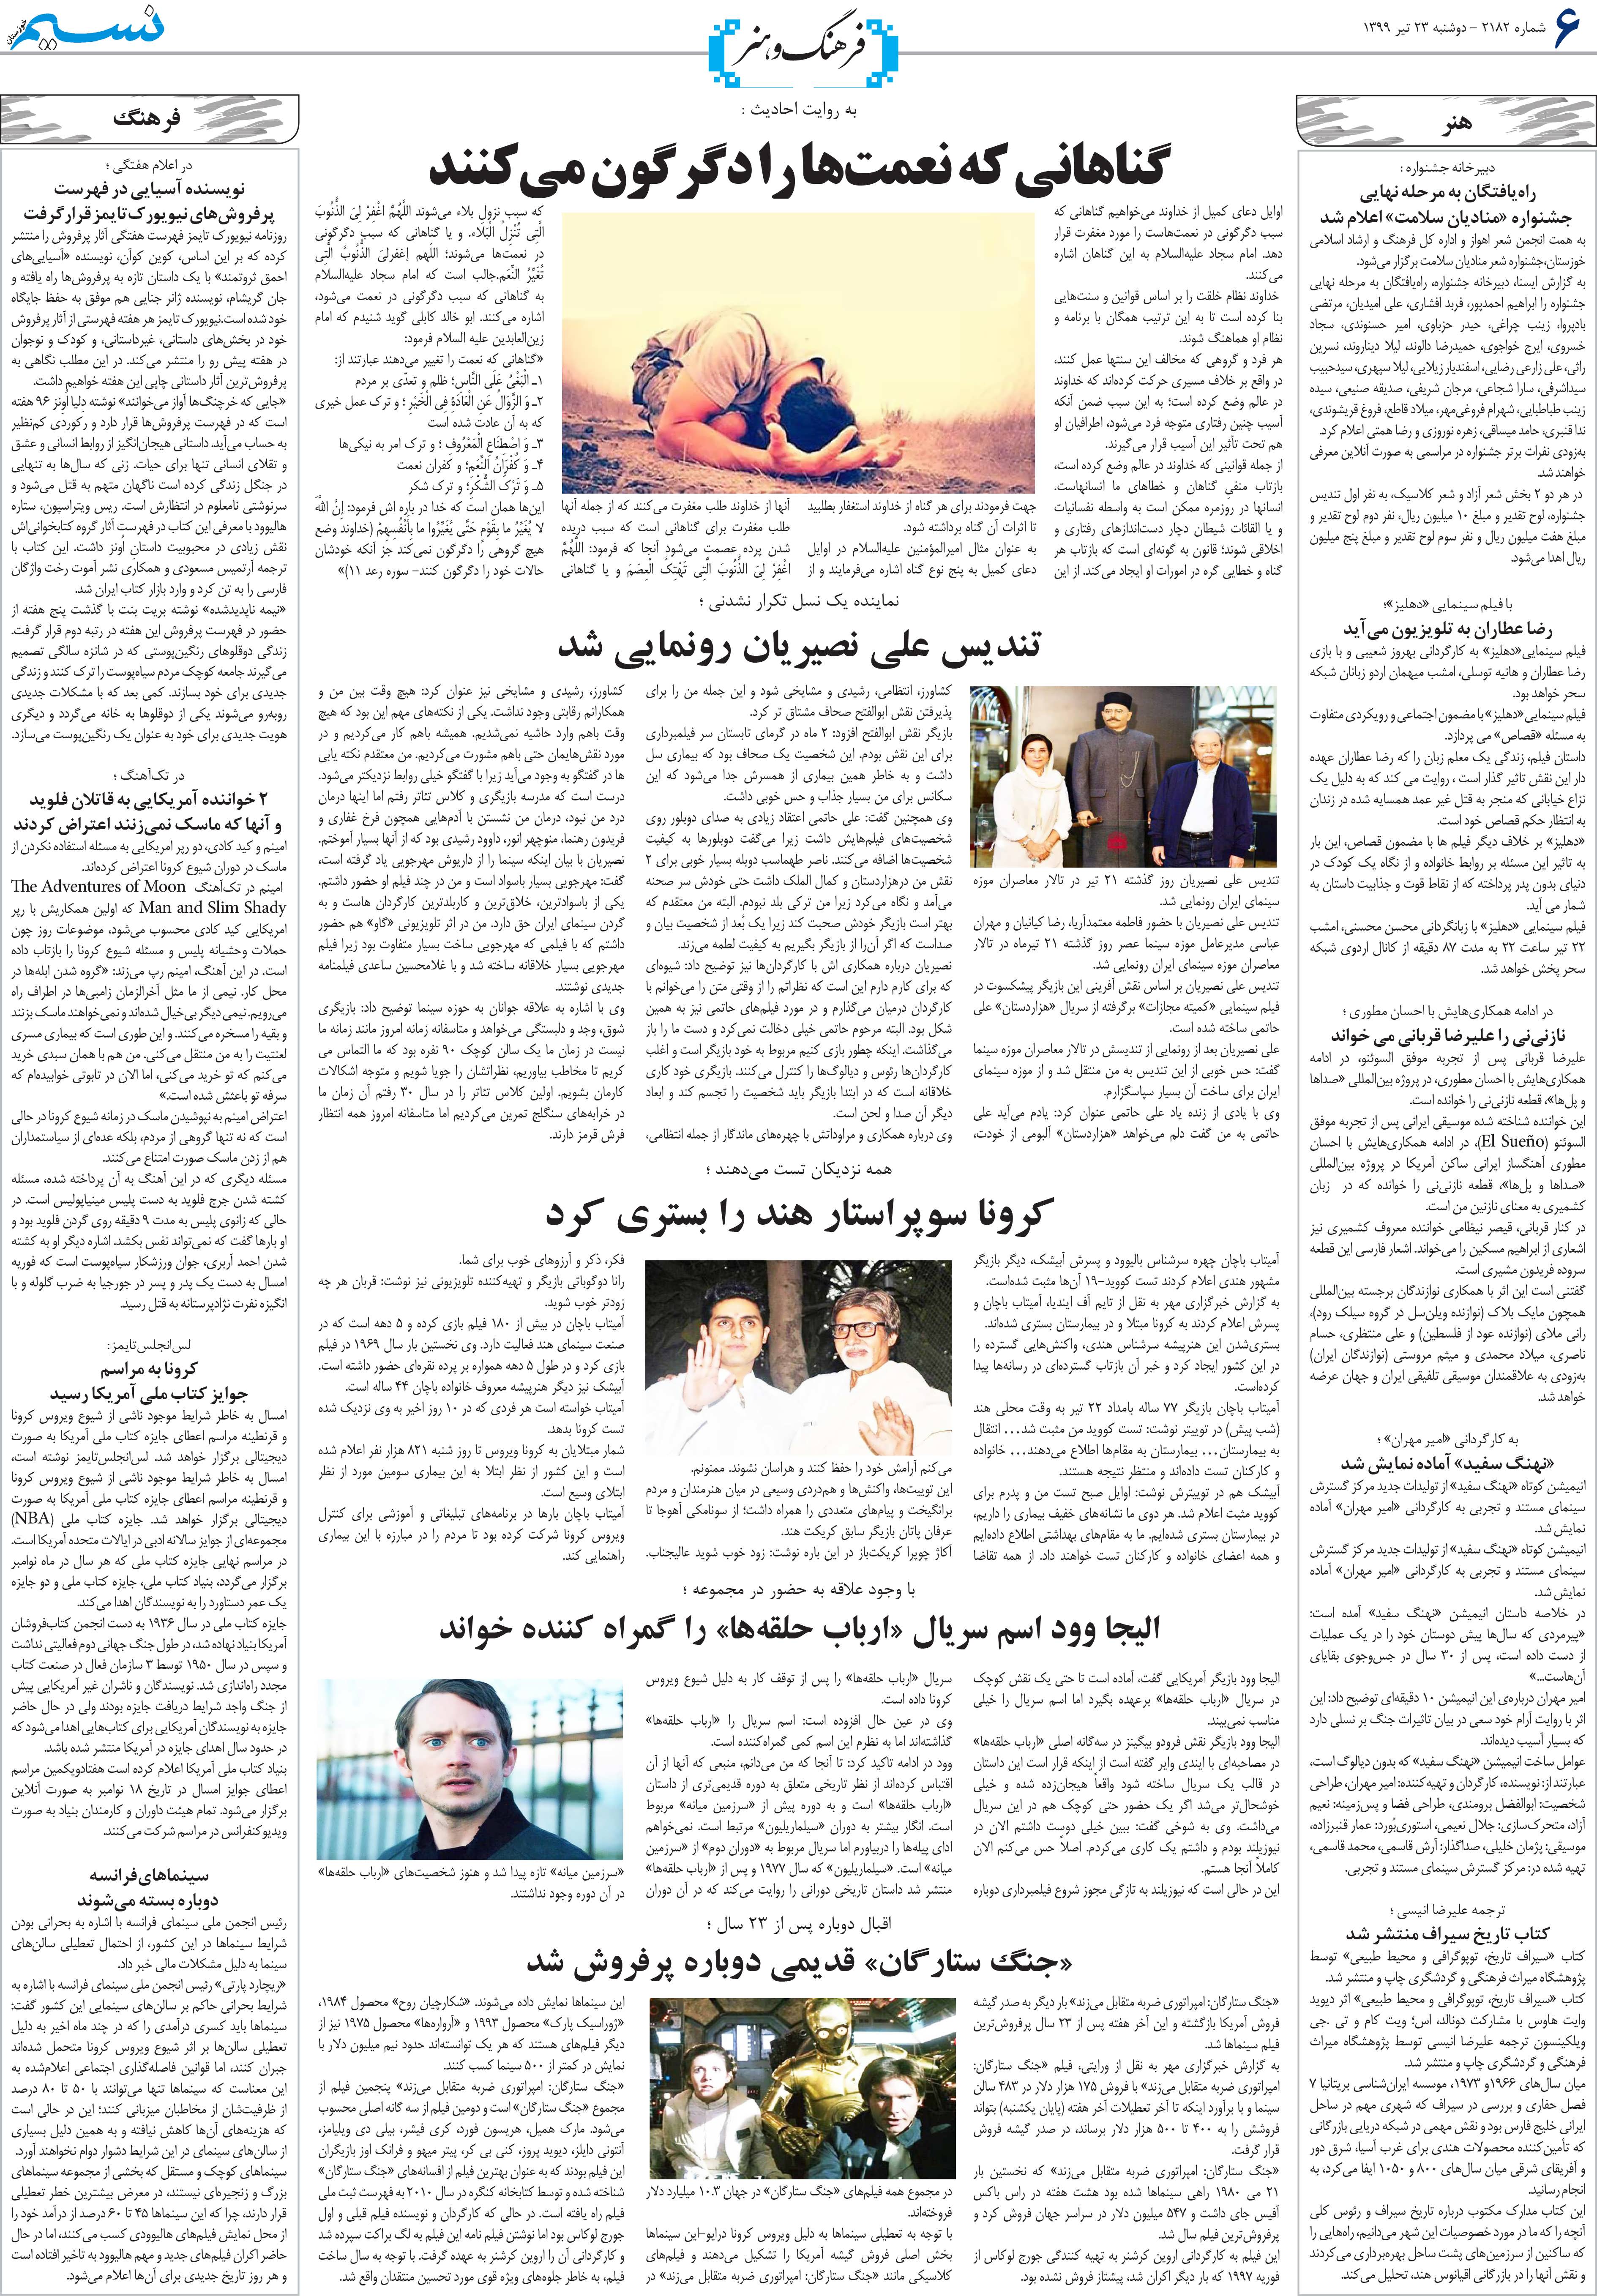 صفحه فرهنگ و هنر روزنامه نسیم شماره 2182